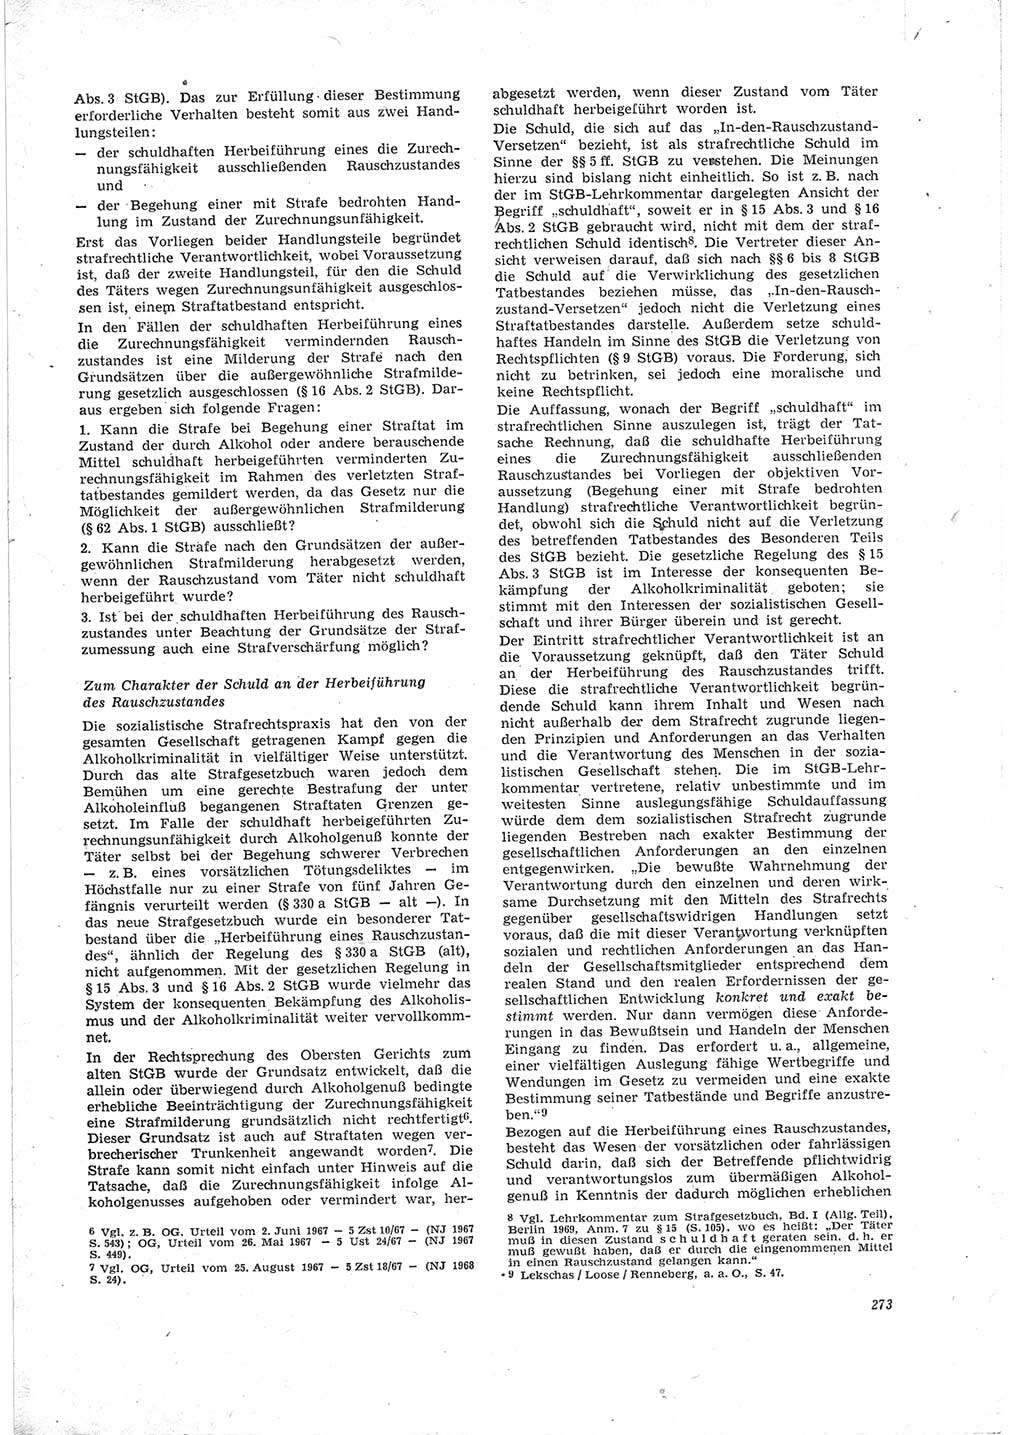 Neue Justiz (NJ), Zeitschrift für Recht und Rechtswissenschaft [Deutsche Demokratische Republik (DDR)], 23. Jahrgang 1969, Seite 273 (NJ DDR 1969, S. 273)